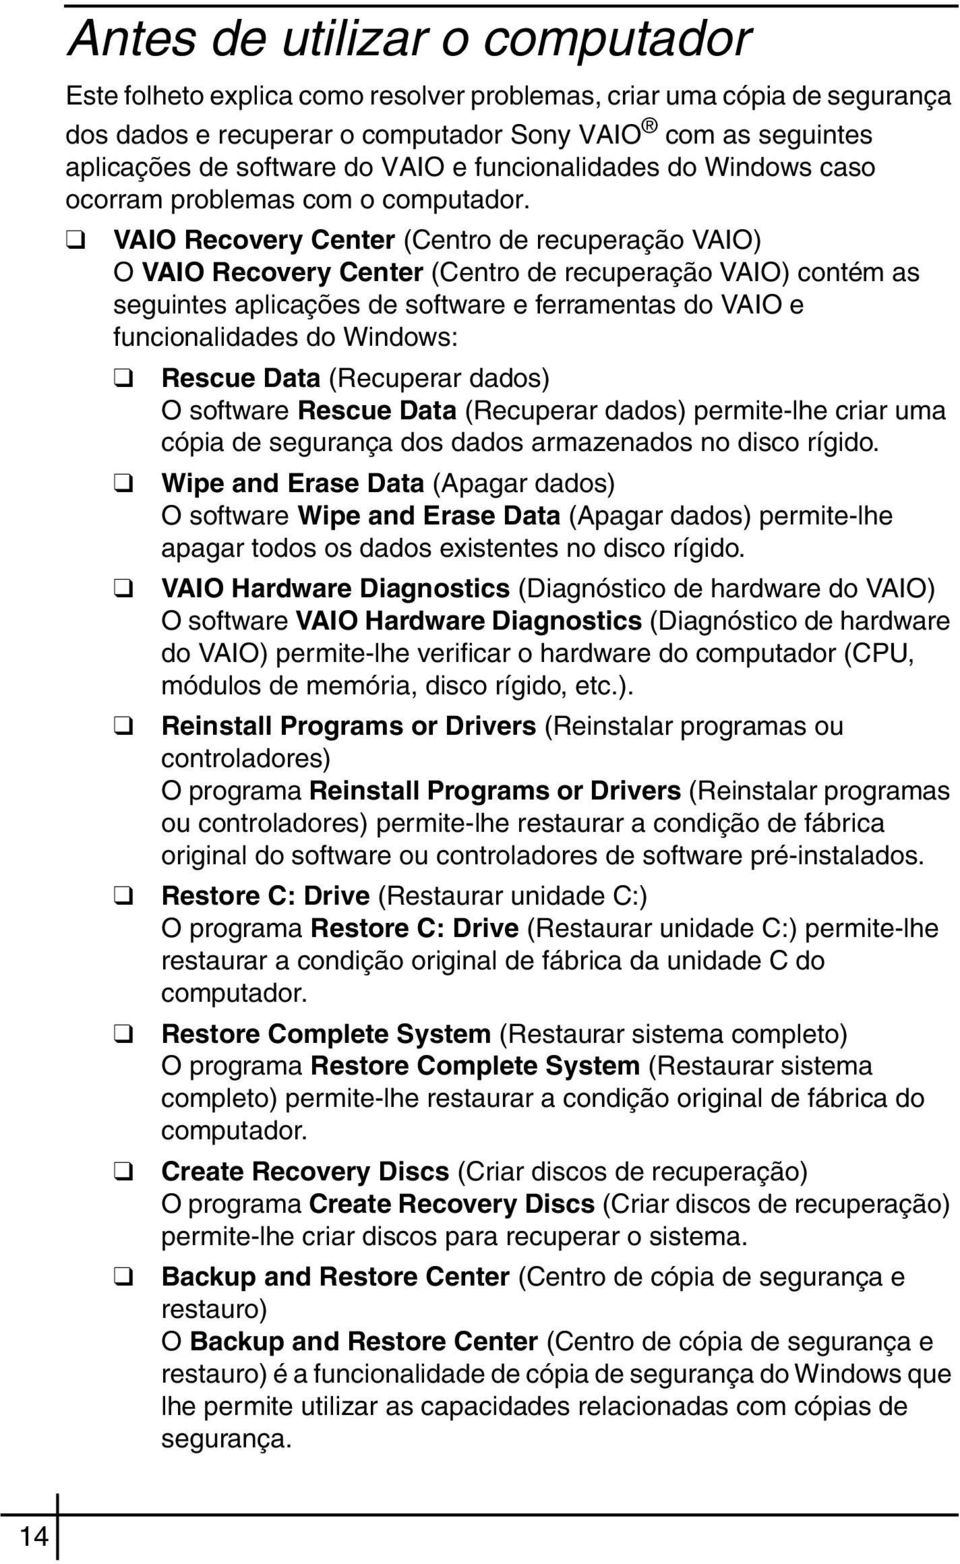 VAIO Recovery Center (Centro de recuperação VAIO) O VAIO Recovery Center (Centro de recuperação VAIO) contém as seguintes aplicações de software e ferramentas do VAIO e funcionalidades do Windows: